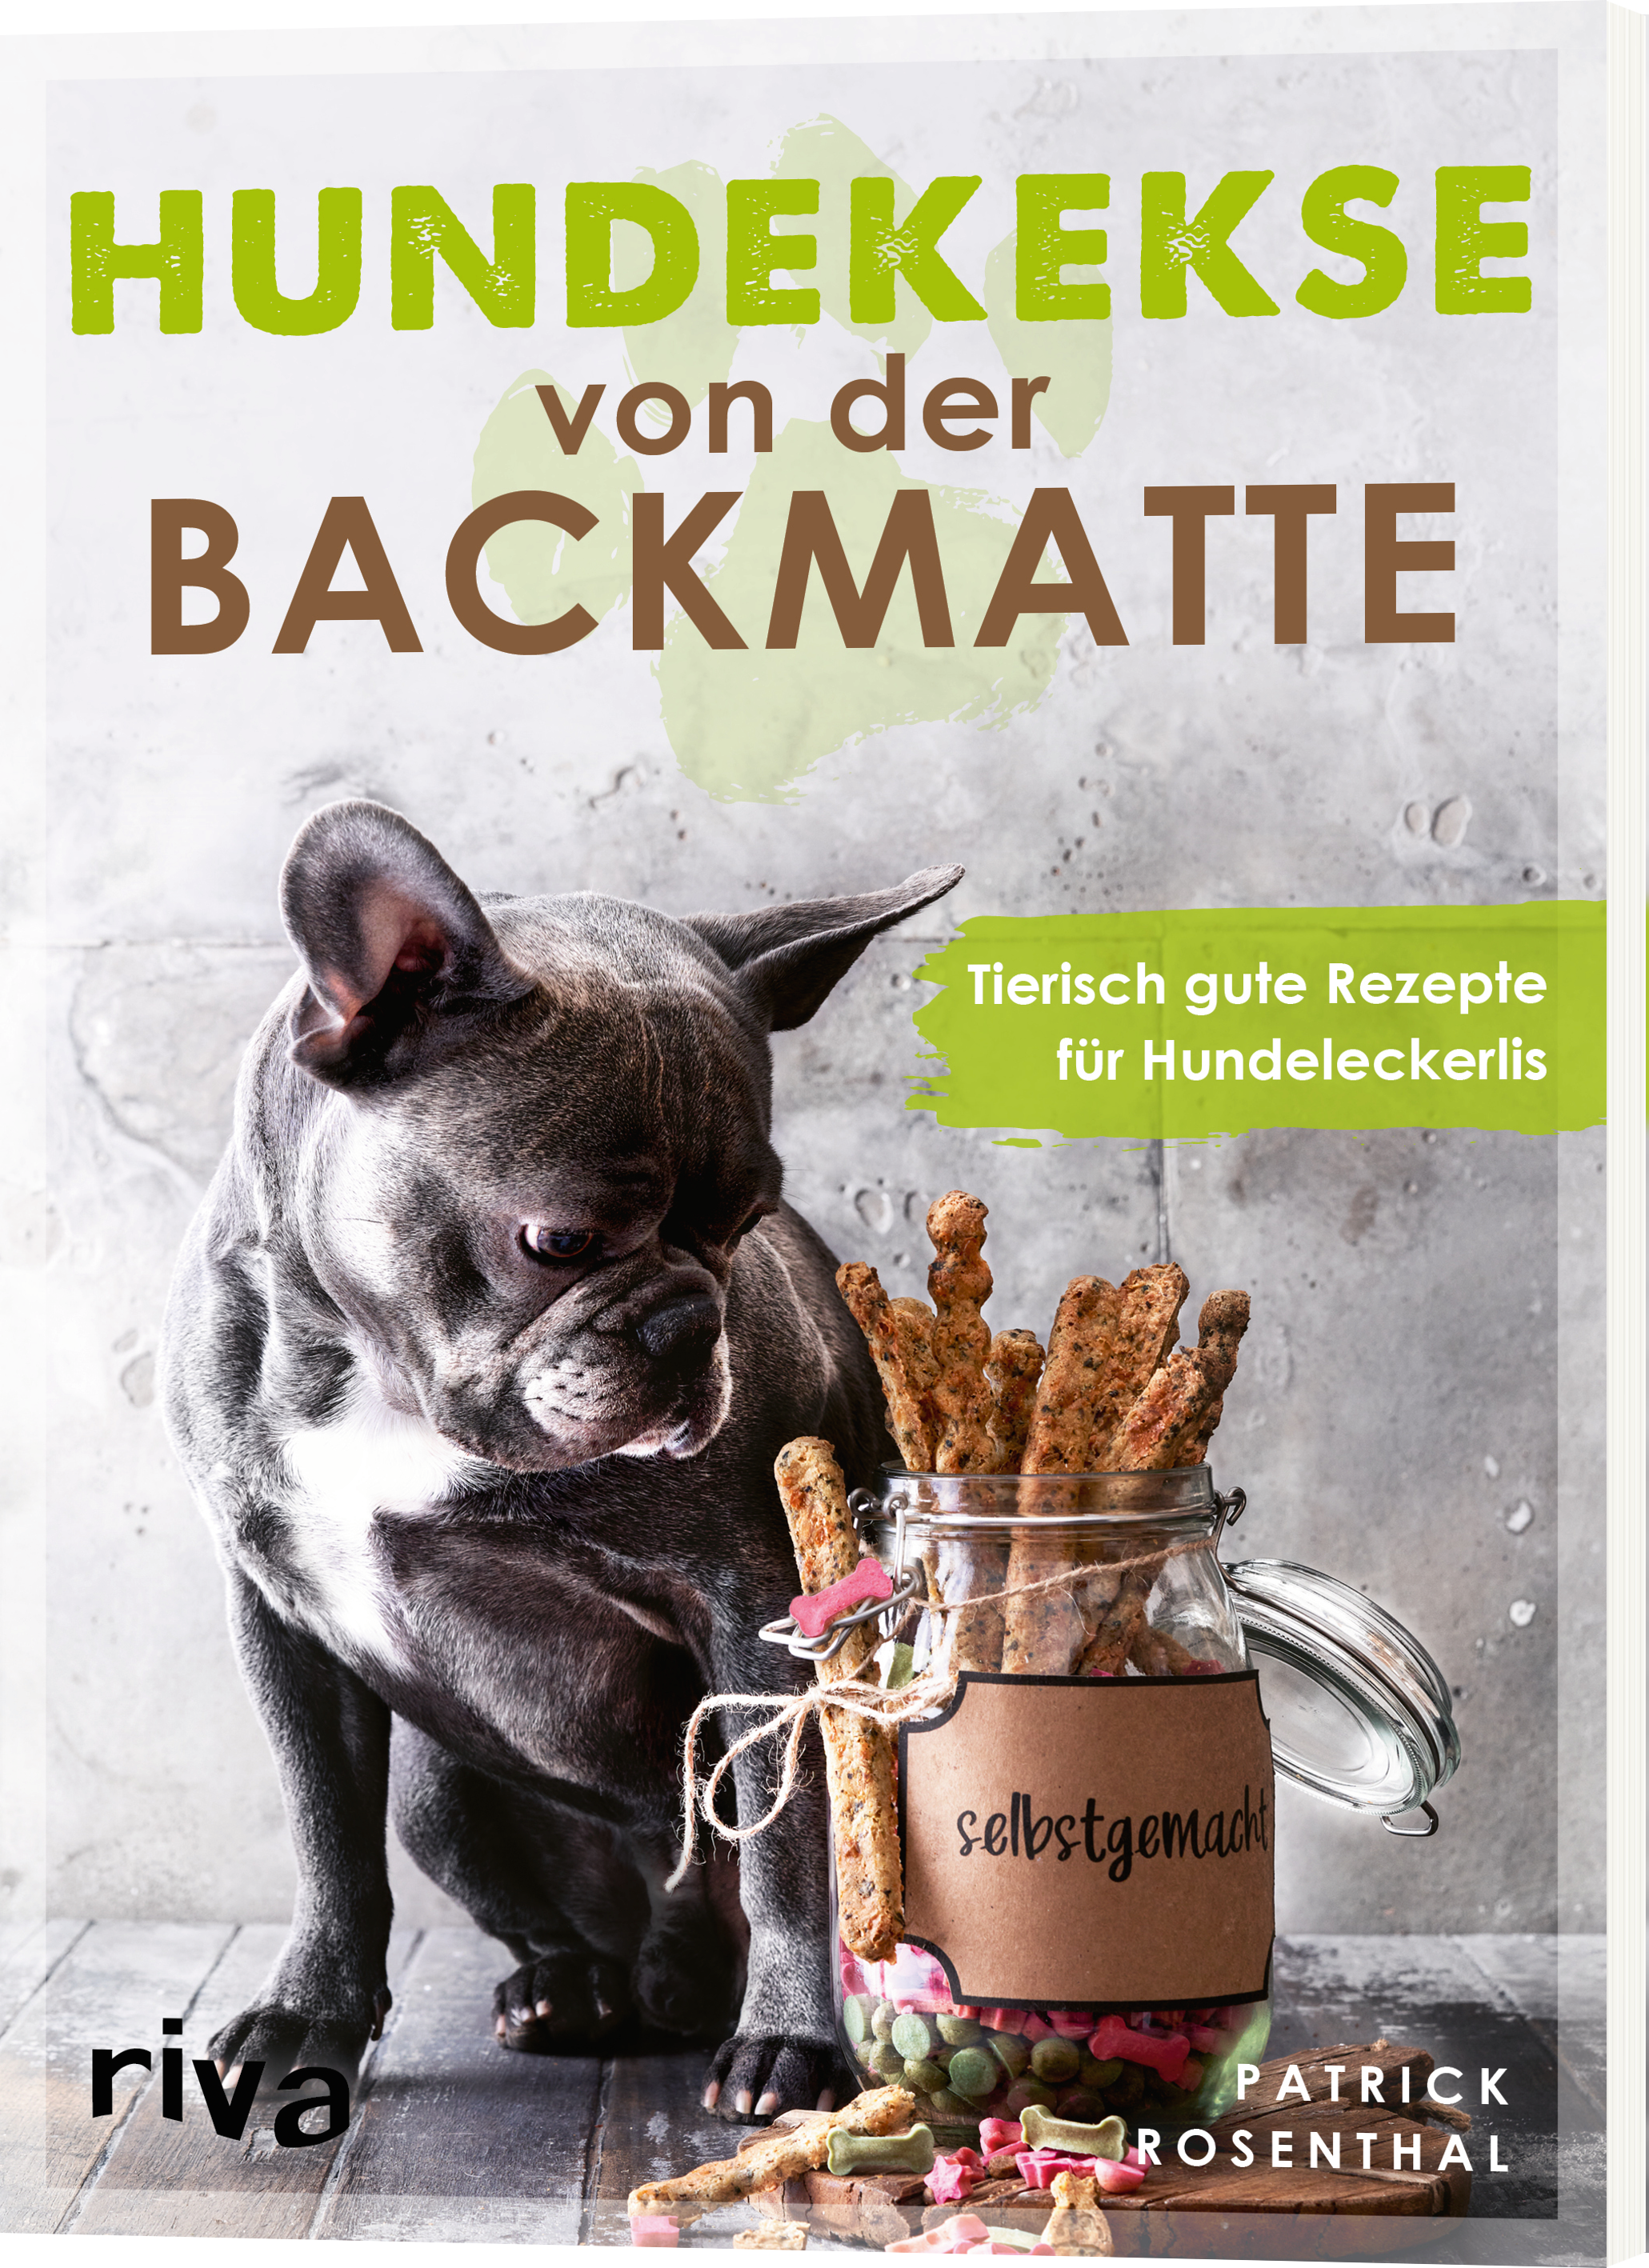 Die besten Backbücher für Hundekekse von der Backmatte